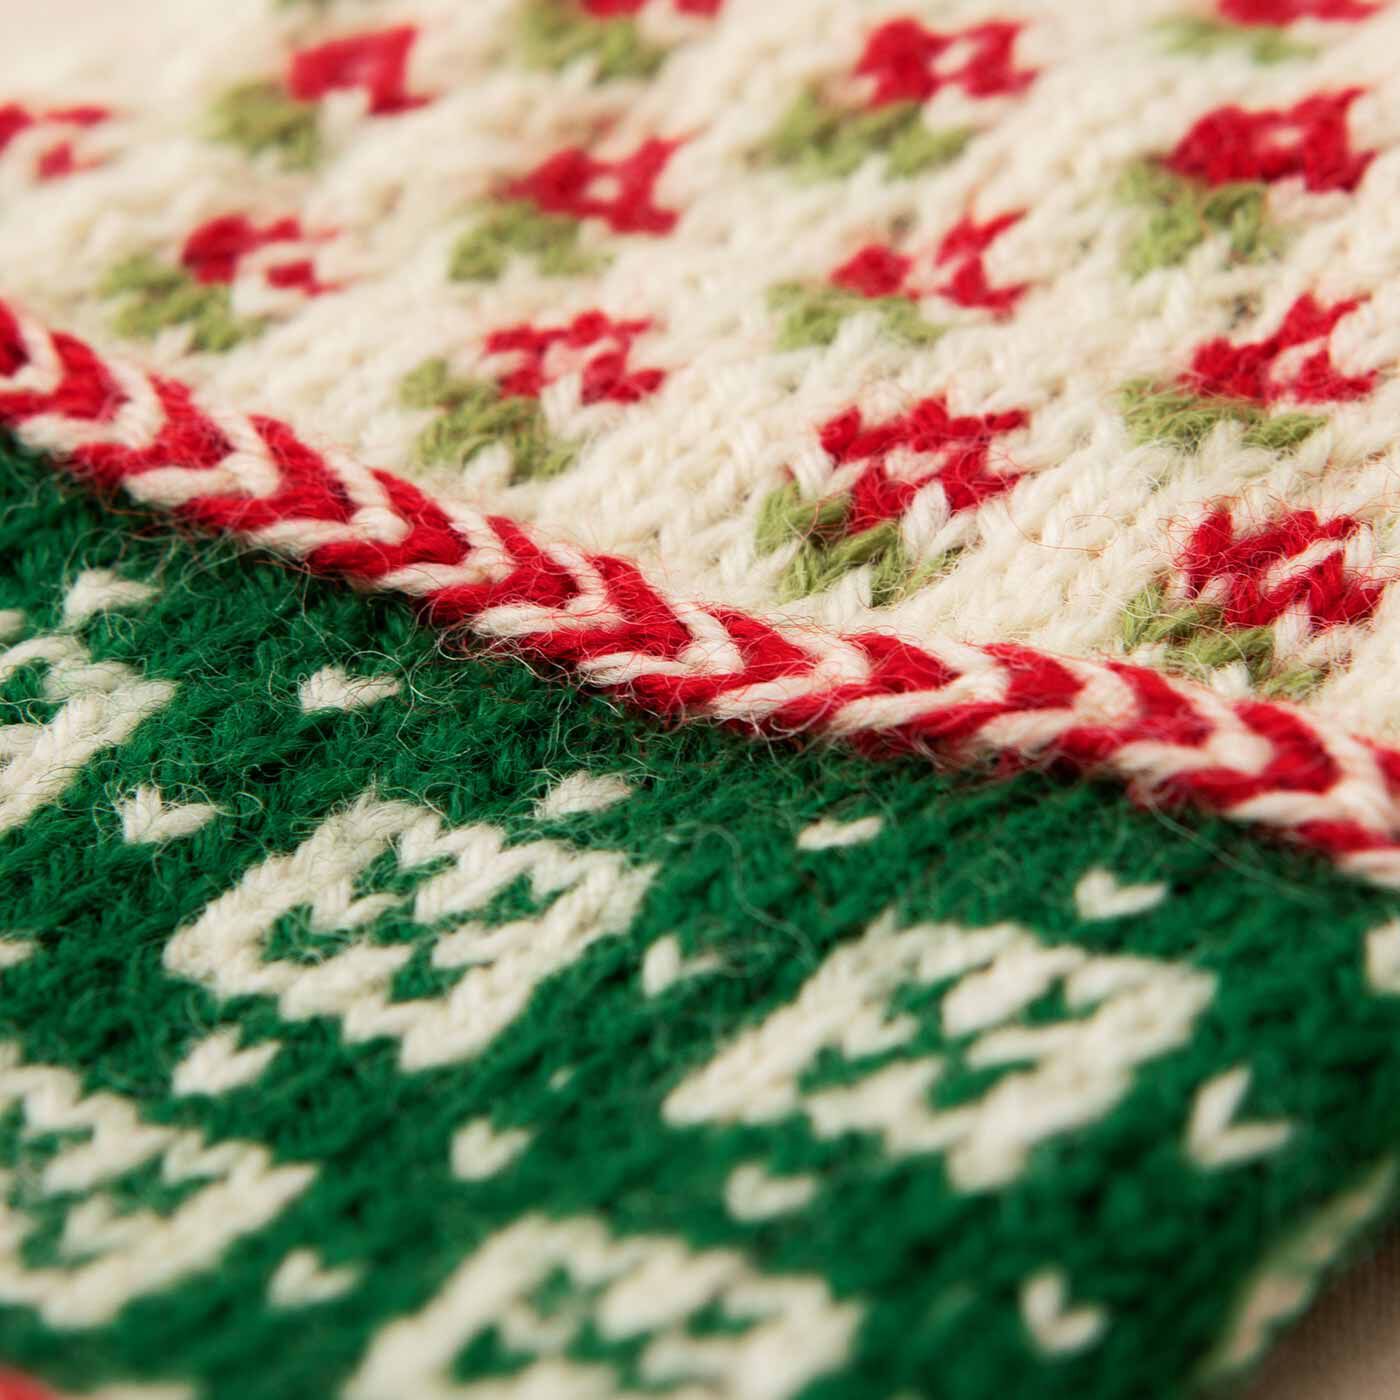 Couturier|ラトビアにあこがれて 編み込み模様がかわいい 三角あたまのミトン|手首のアクセントとなるぽこっとねじれた編み目は、“キヒノヴィッツ”と呼ばれる伝統技法。エストニアの小さな島“キヒヌ”が由来で、バルト三国のミトンによく見られます。